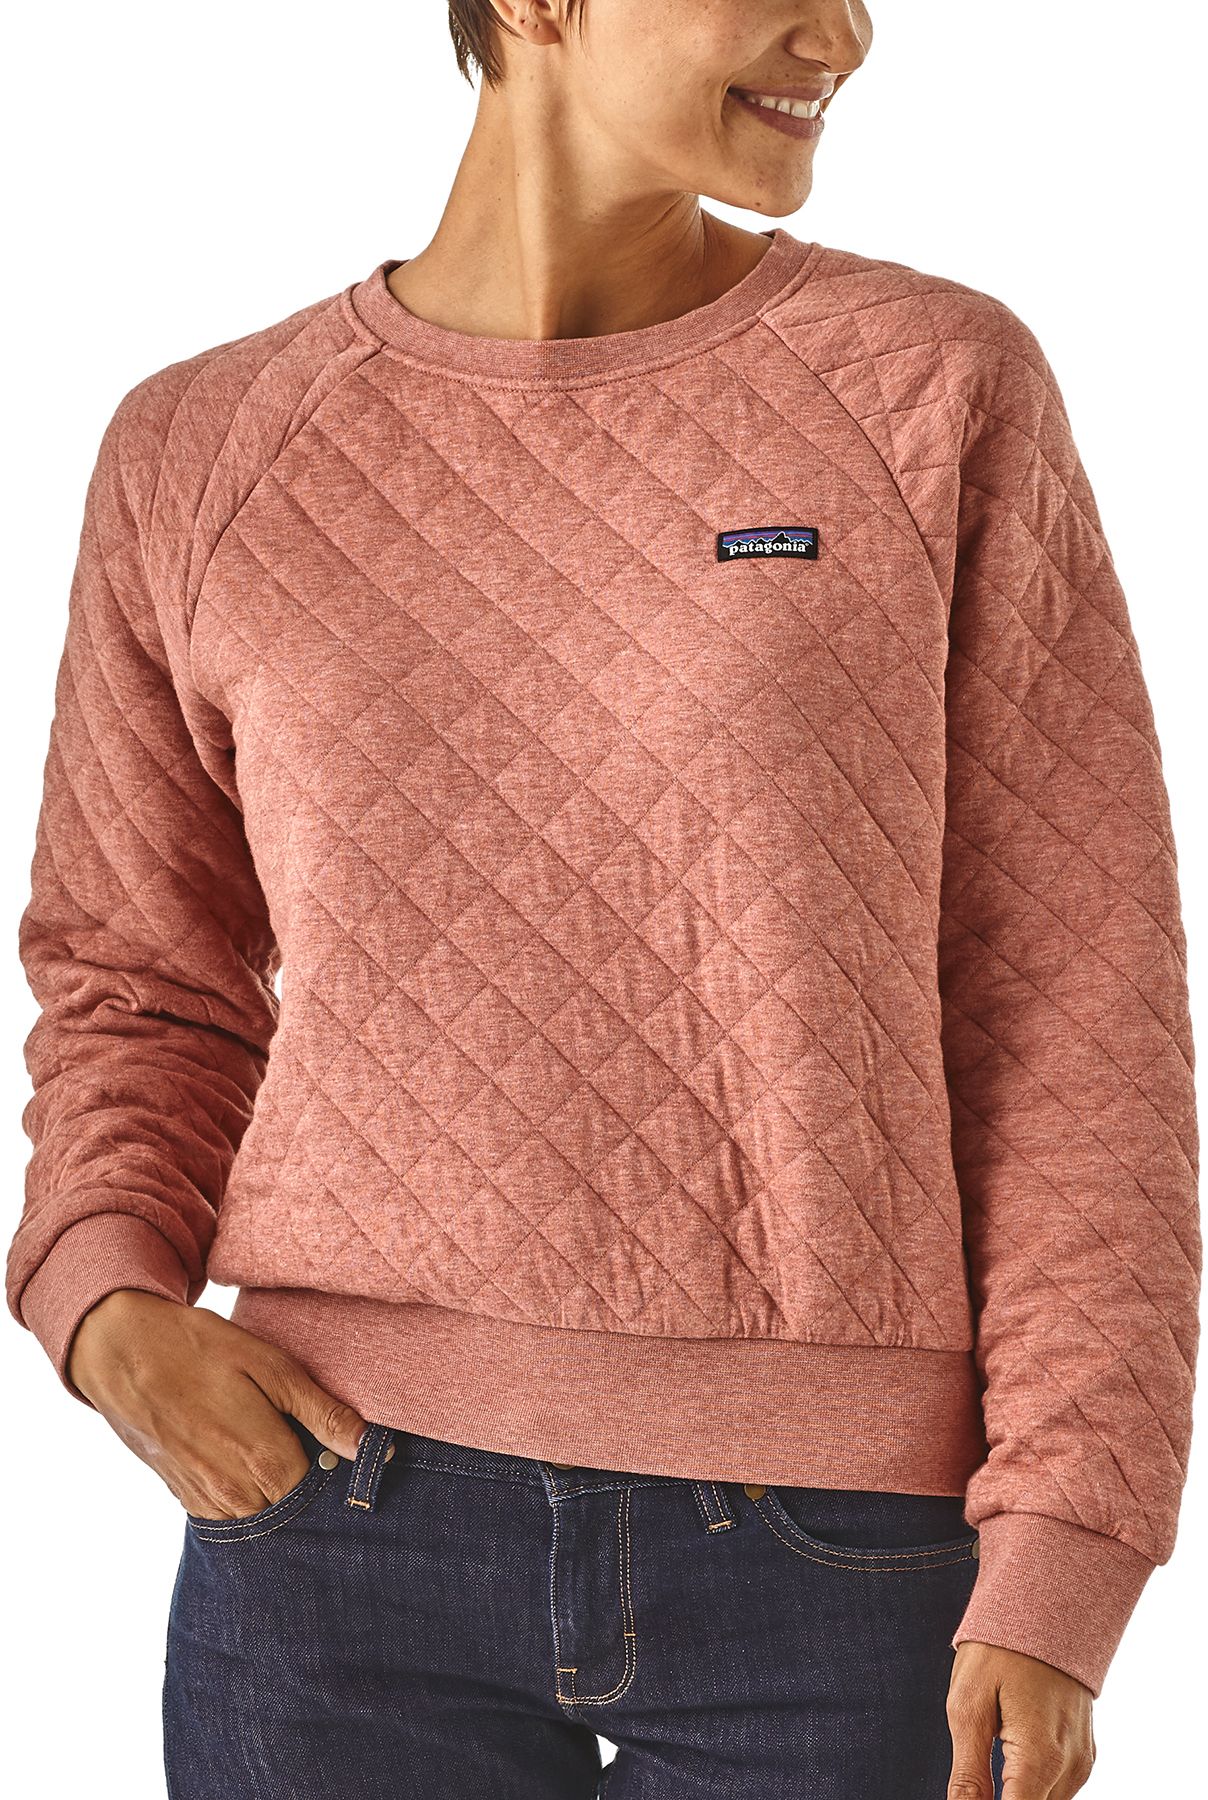 patagonia organic cotton sweatshirt